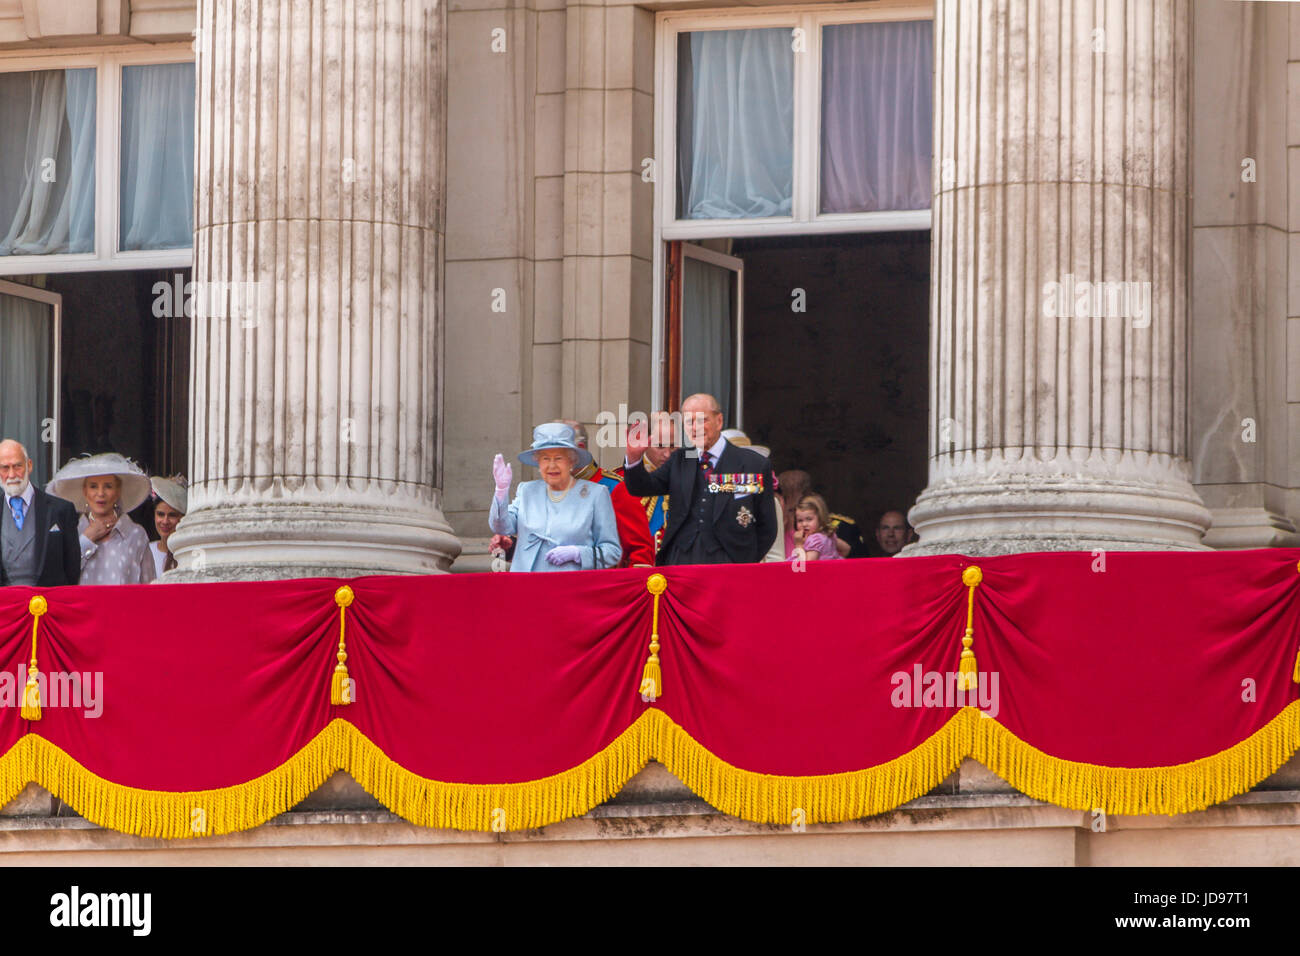 Die Königin und Prinz Phillip winken auf dem Balkon des Buckingham Palace nach der Trooping the Color Parade, London, Großbritannien, 2017 Stockfoto